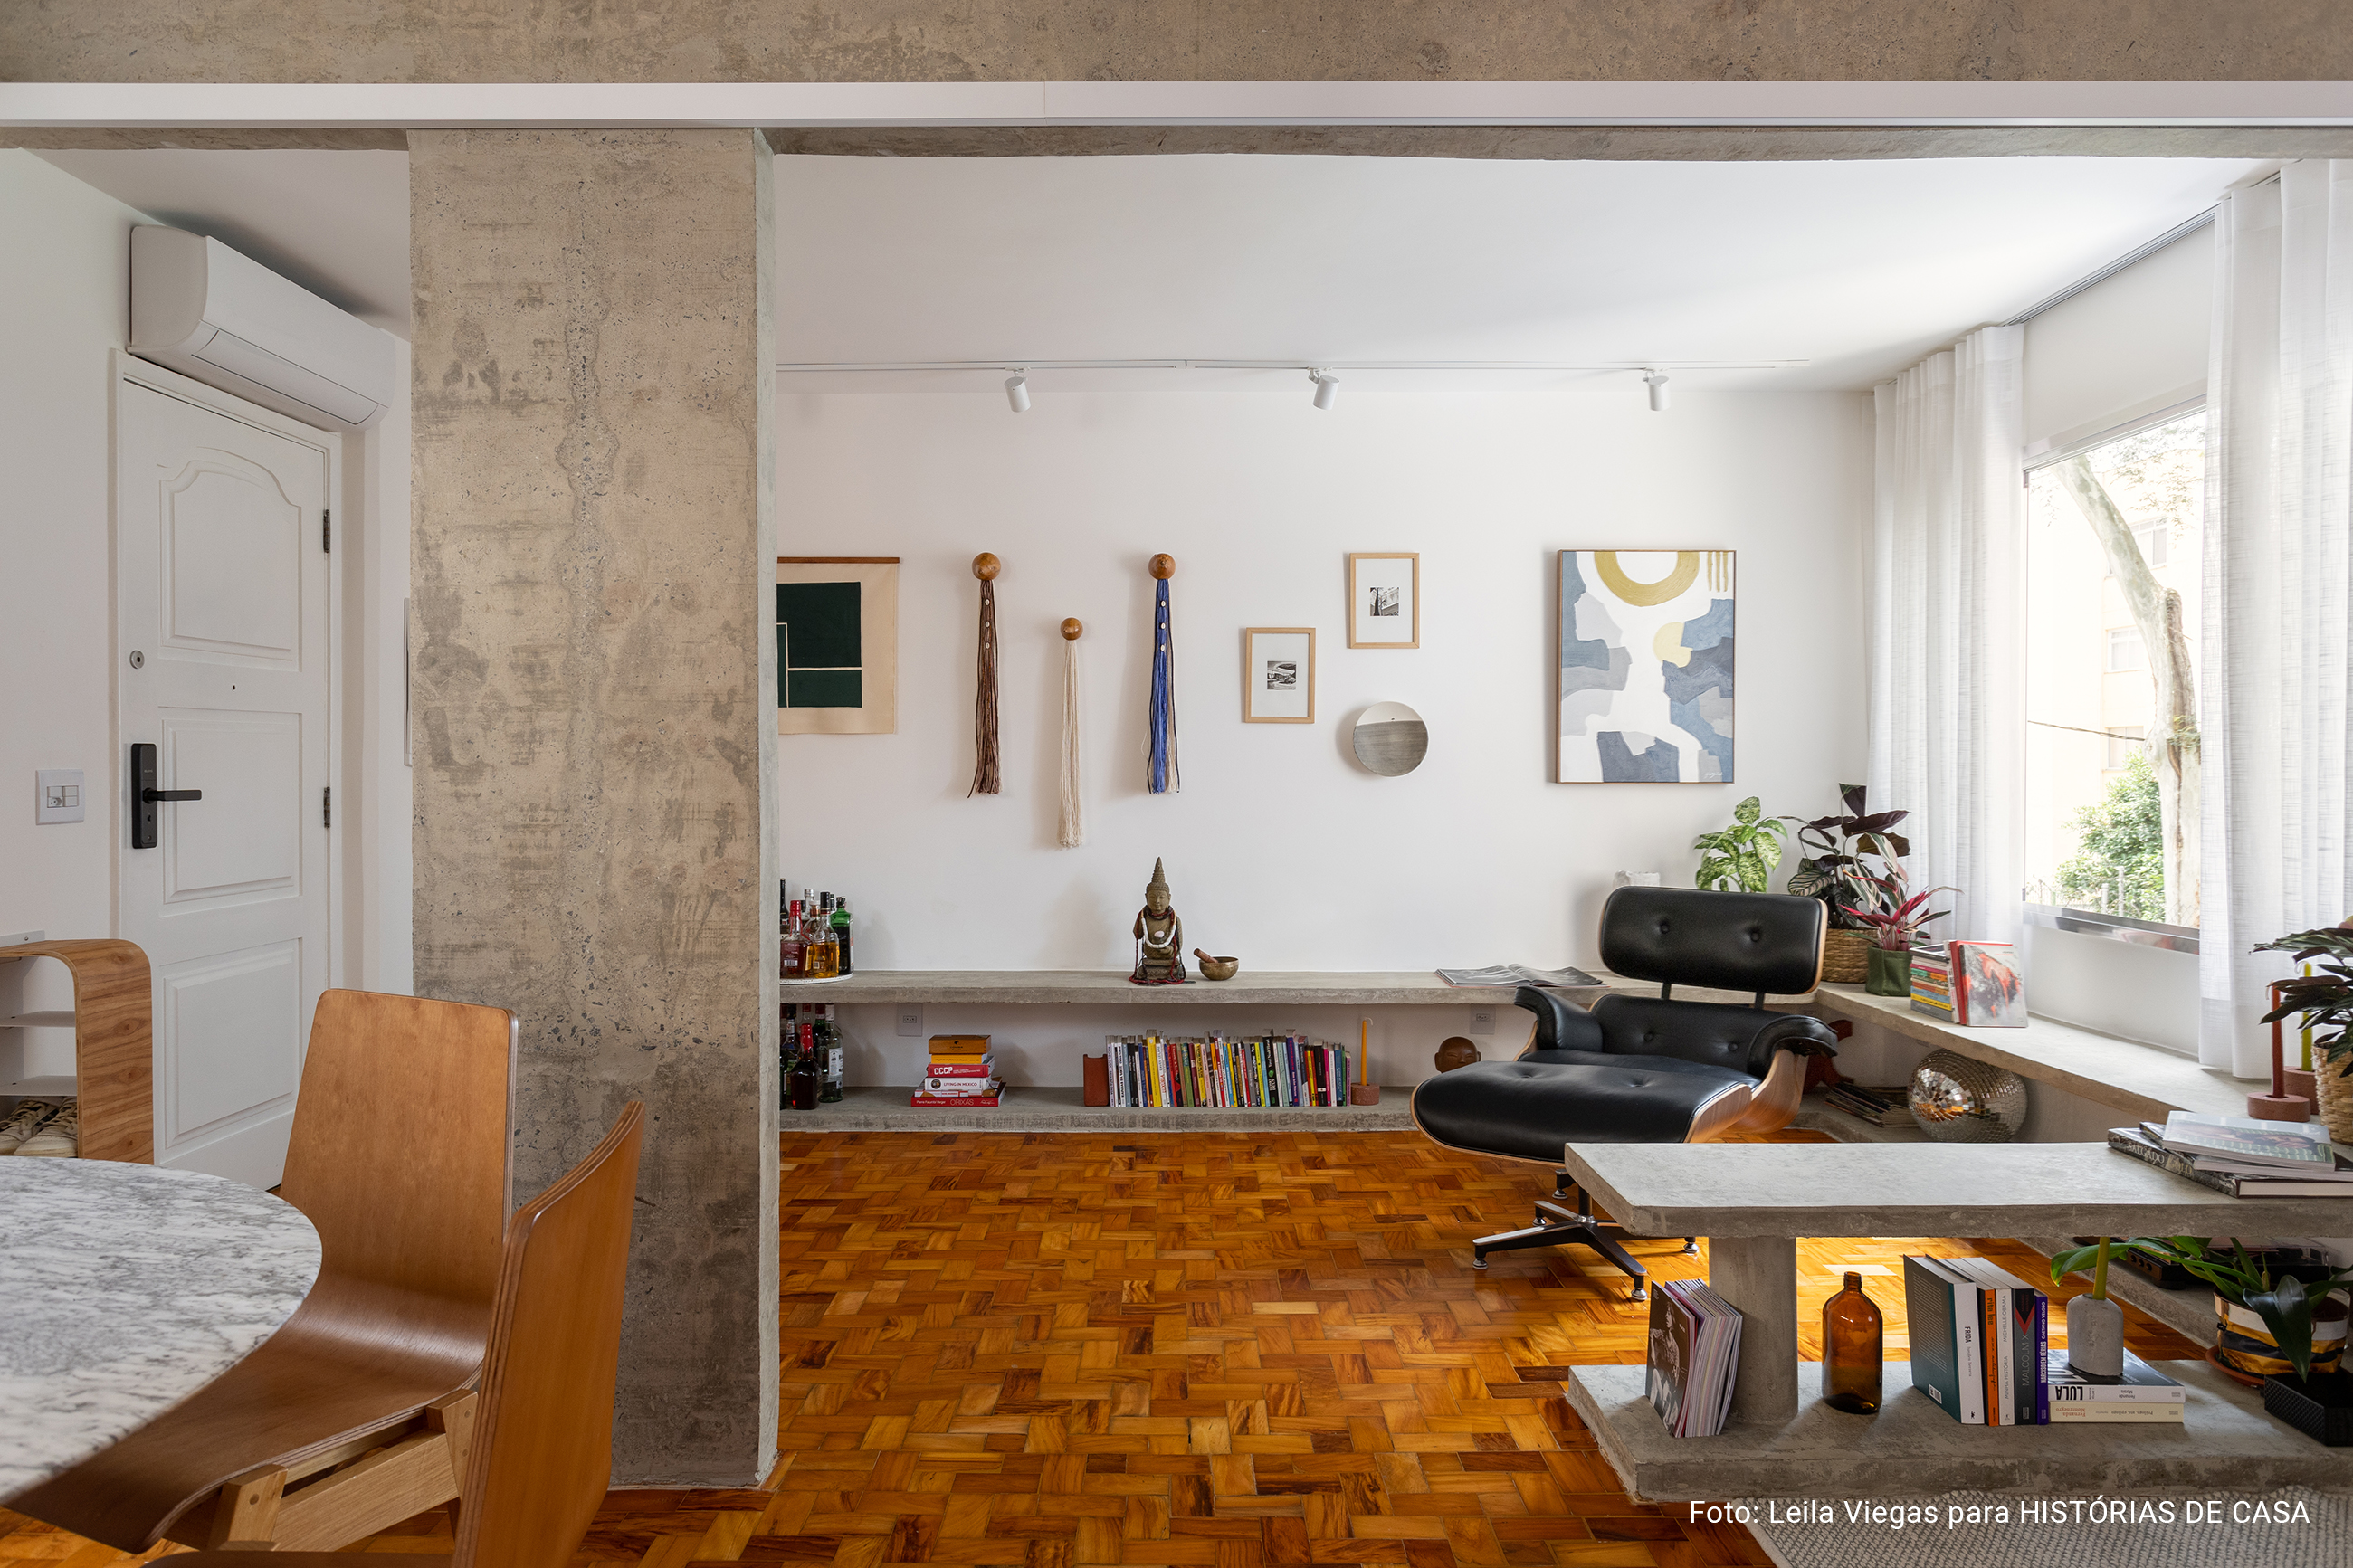 Apartamento com concreto, madeira e cozinha integrada.